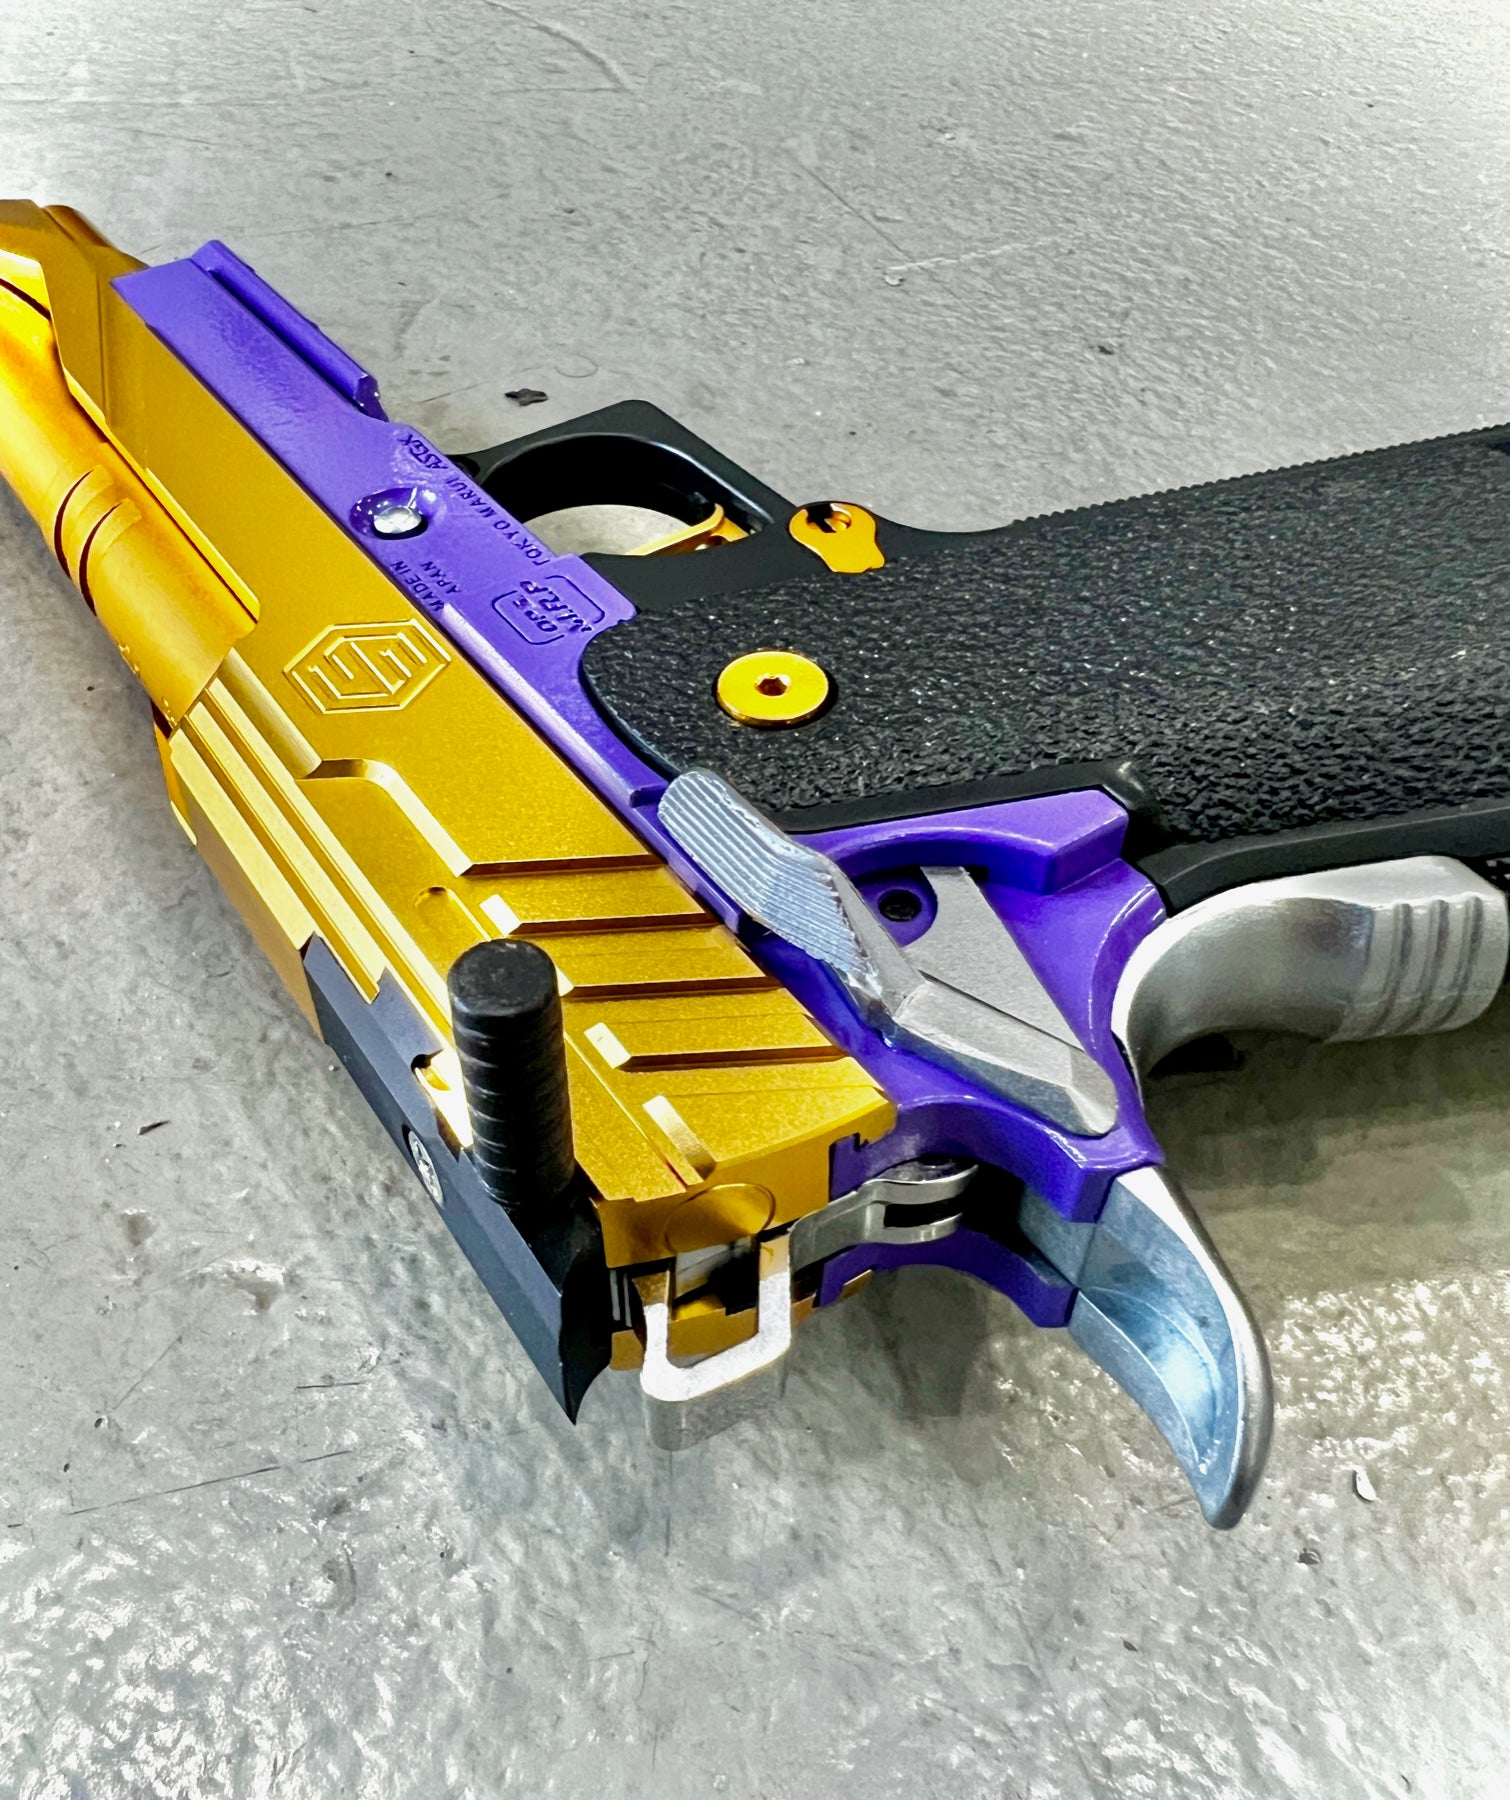 Simple Airsoft Custom Pistol Lakers